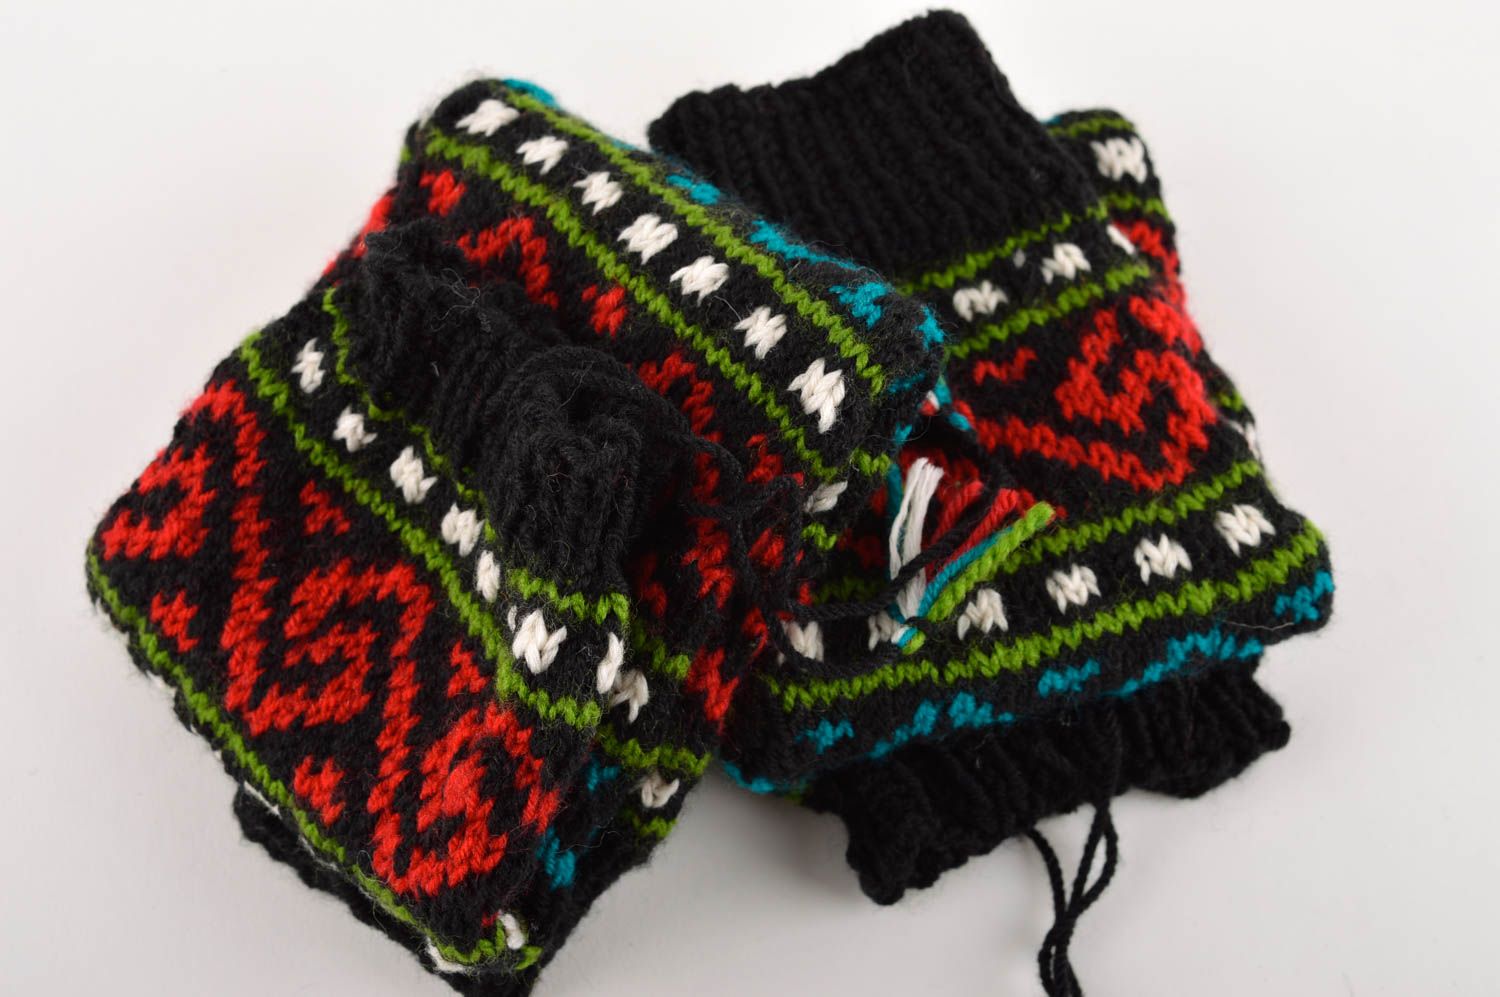 Handmade leg warmers knitted winter socks woolen leg warmers for women photo 4